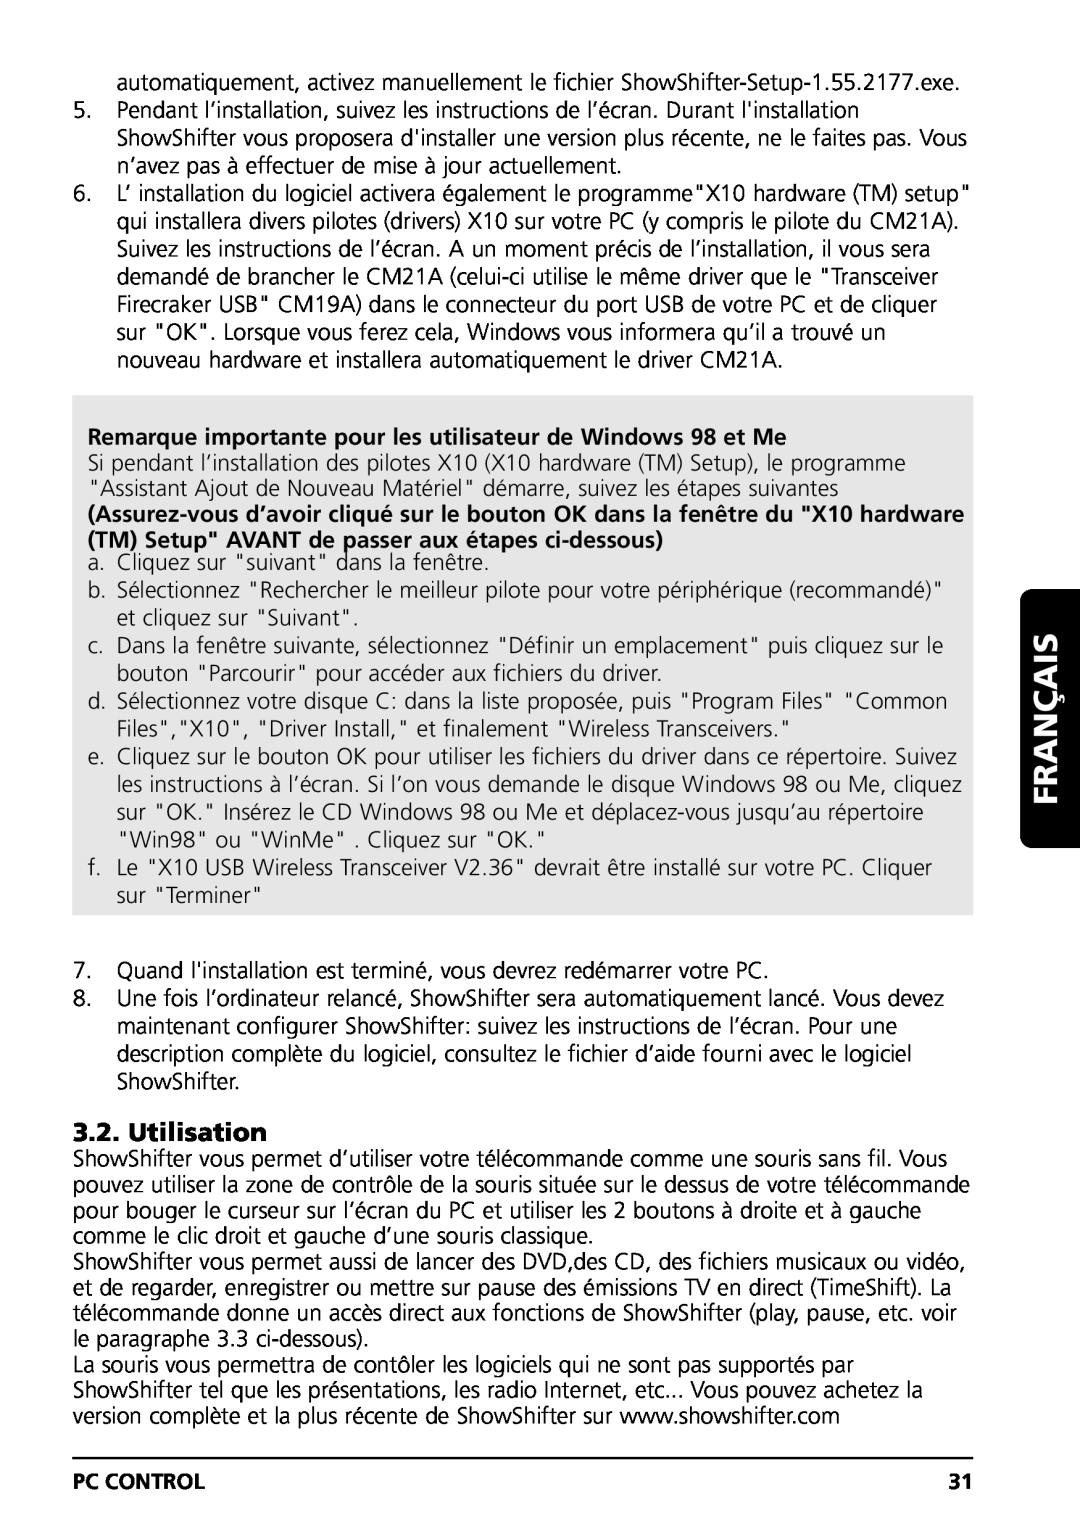 Marmitek PC CONTROL owner manual Utilisation, Remarque importante pour les utilisateur de Windows 98 et Me, Français 